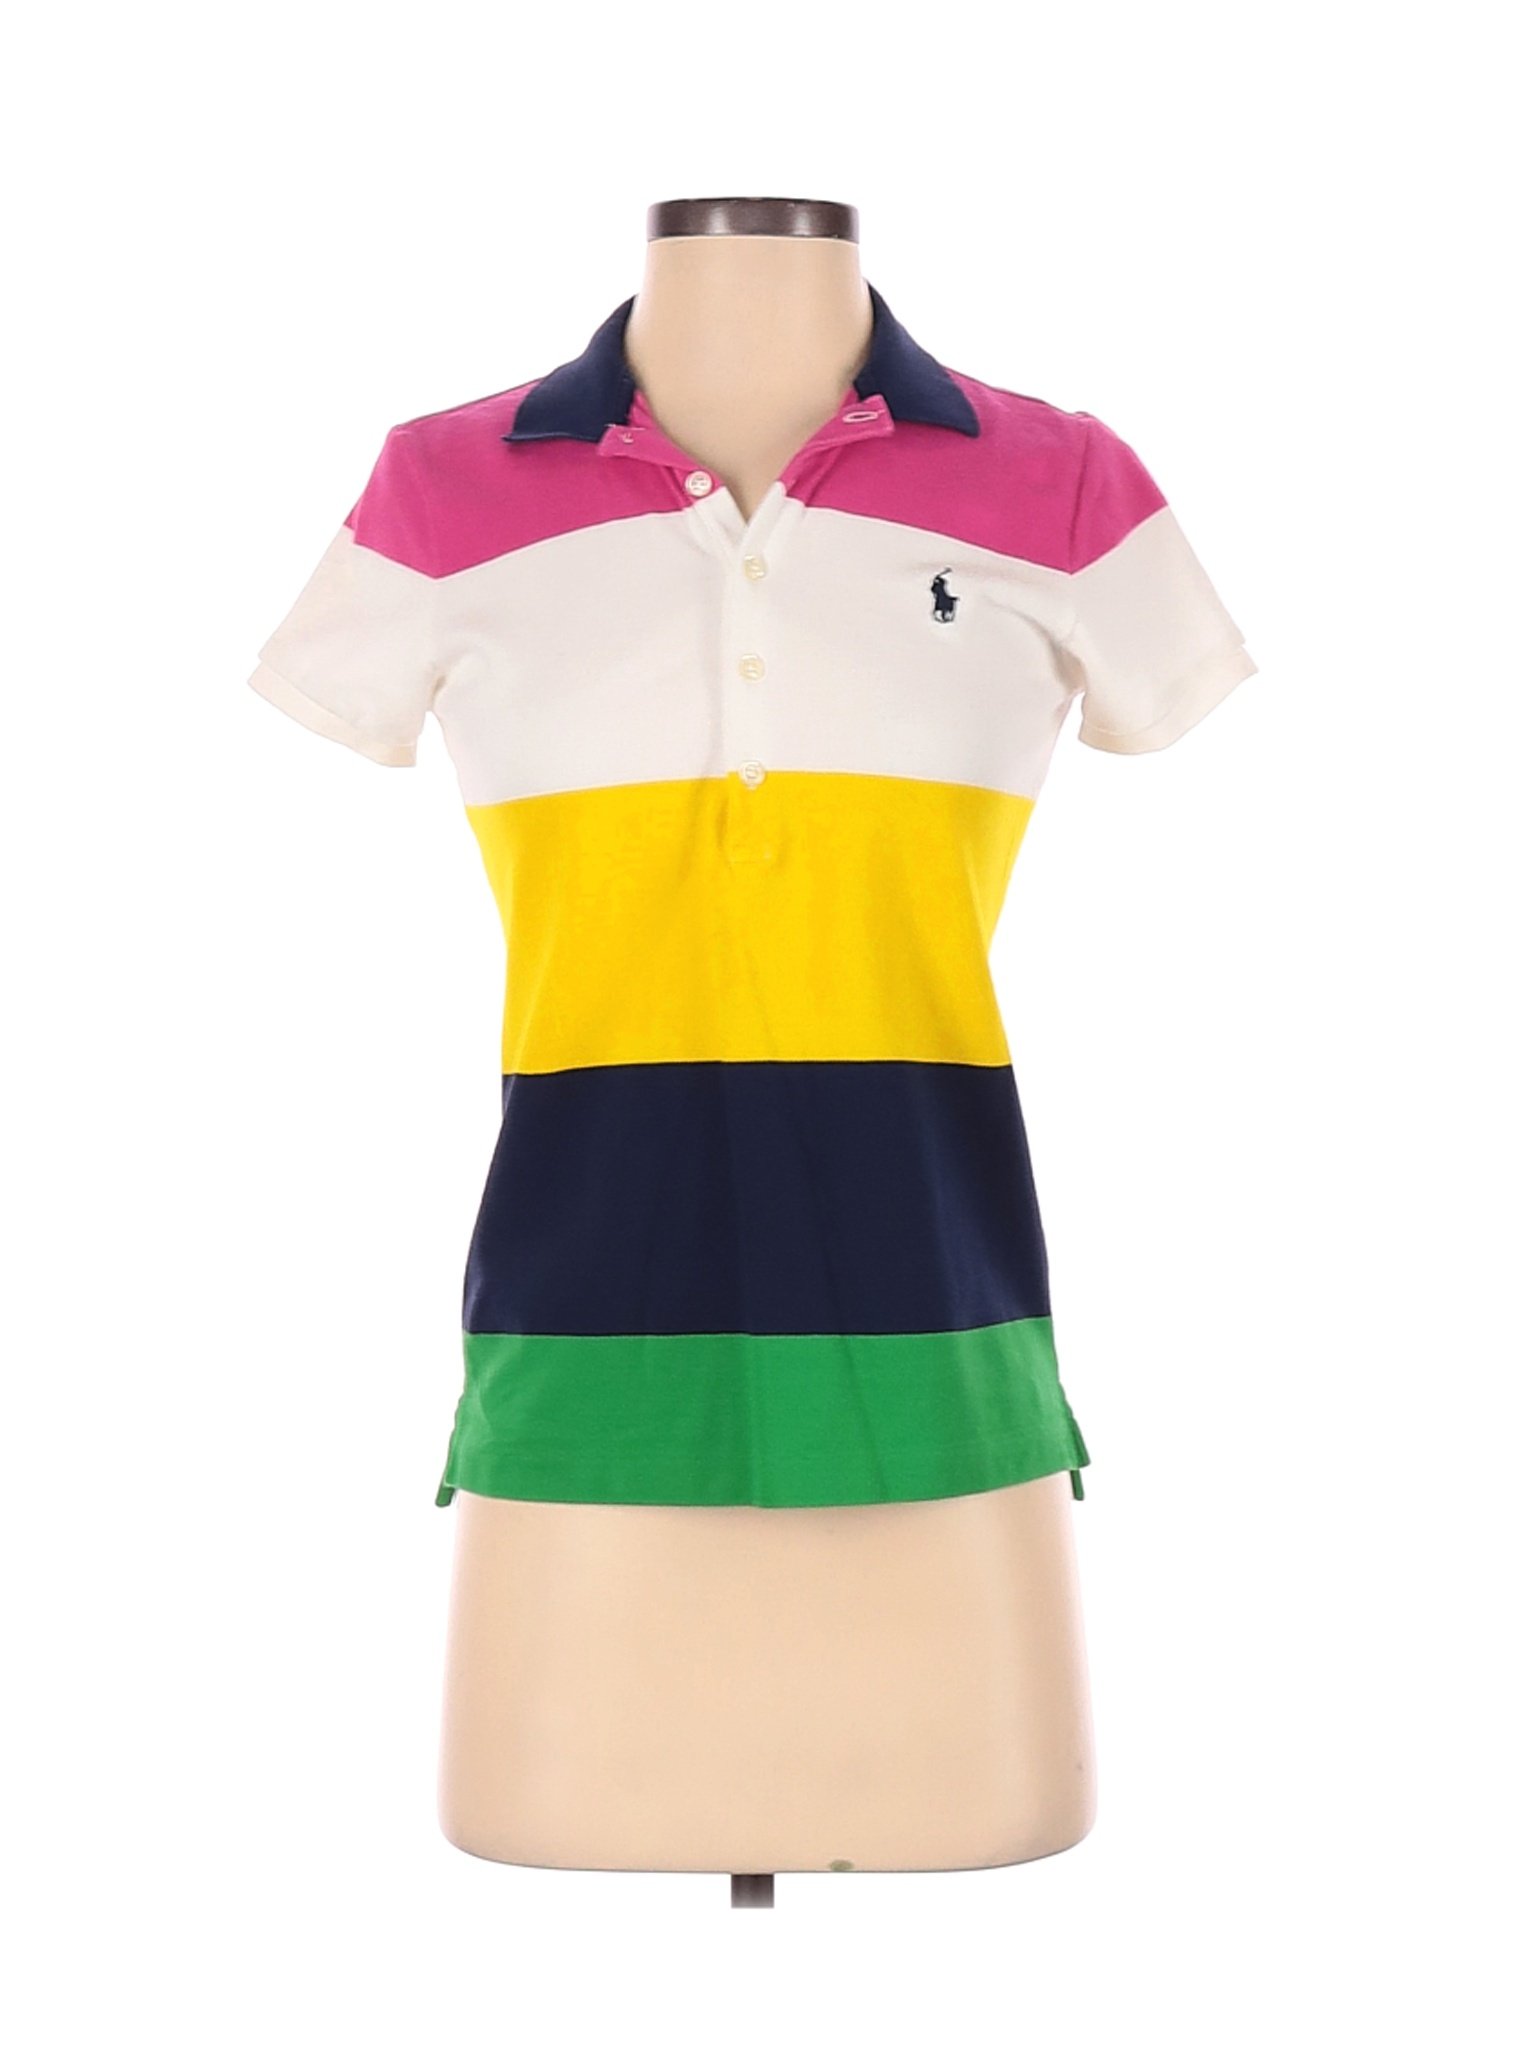 Ralph Lauren Women Ivory Short Sleeve Polo S | eBay